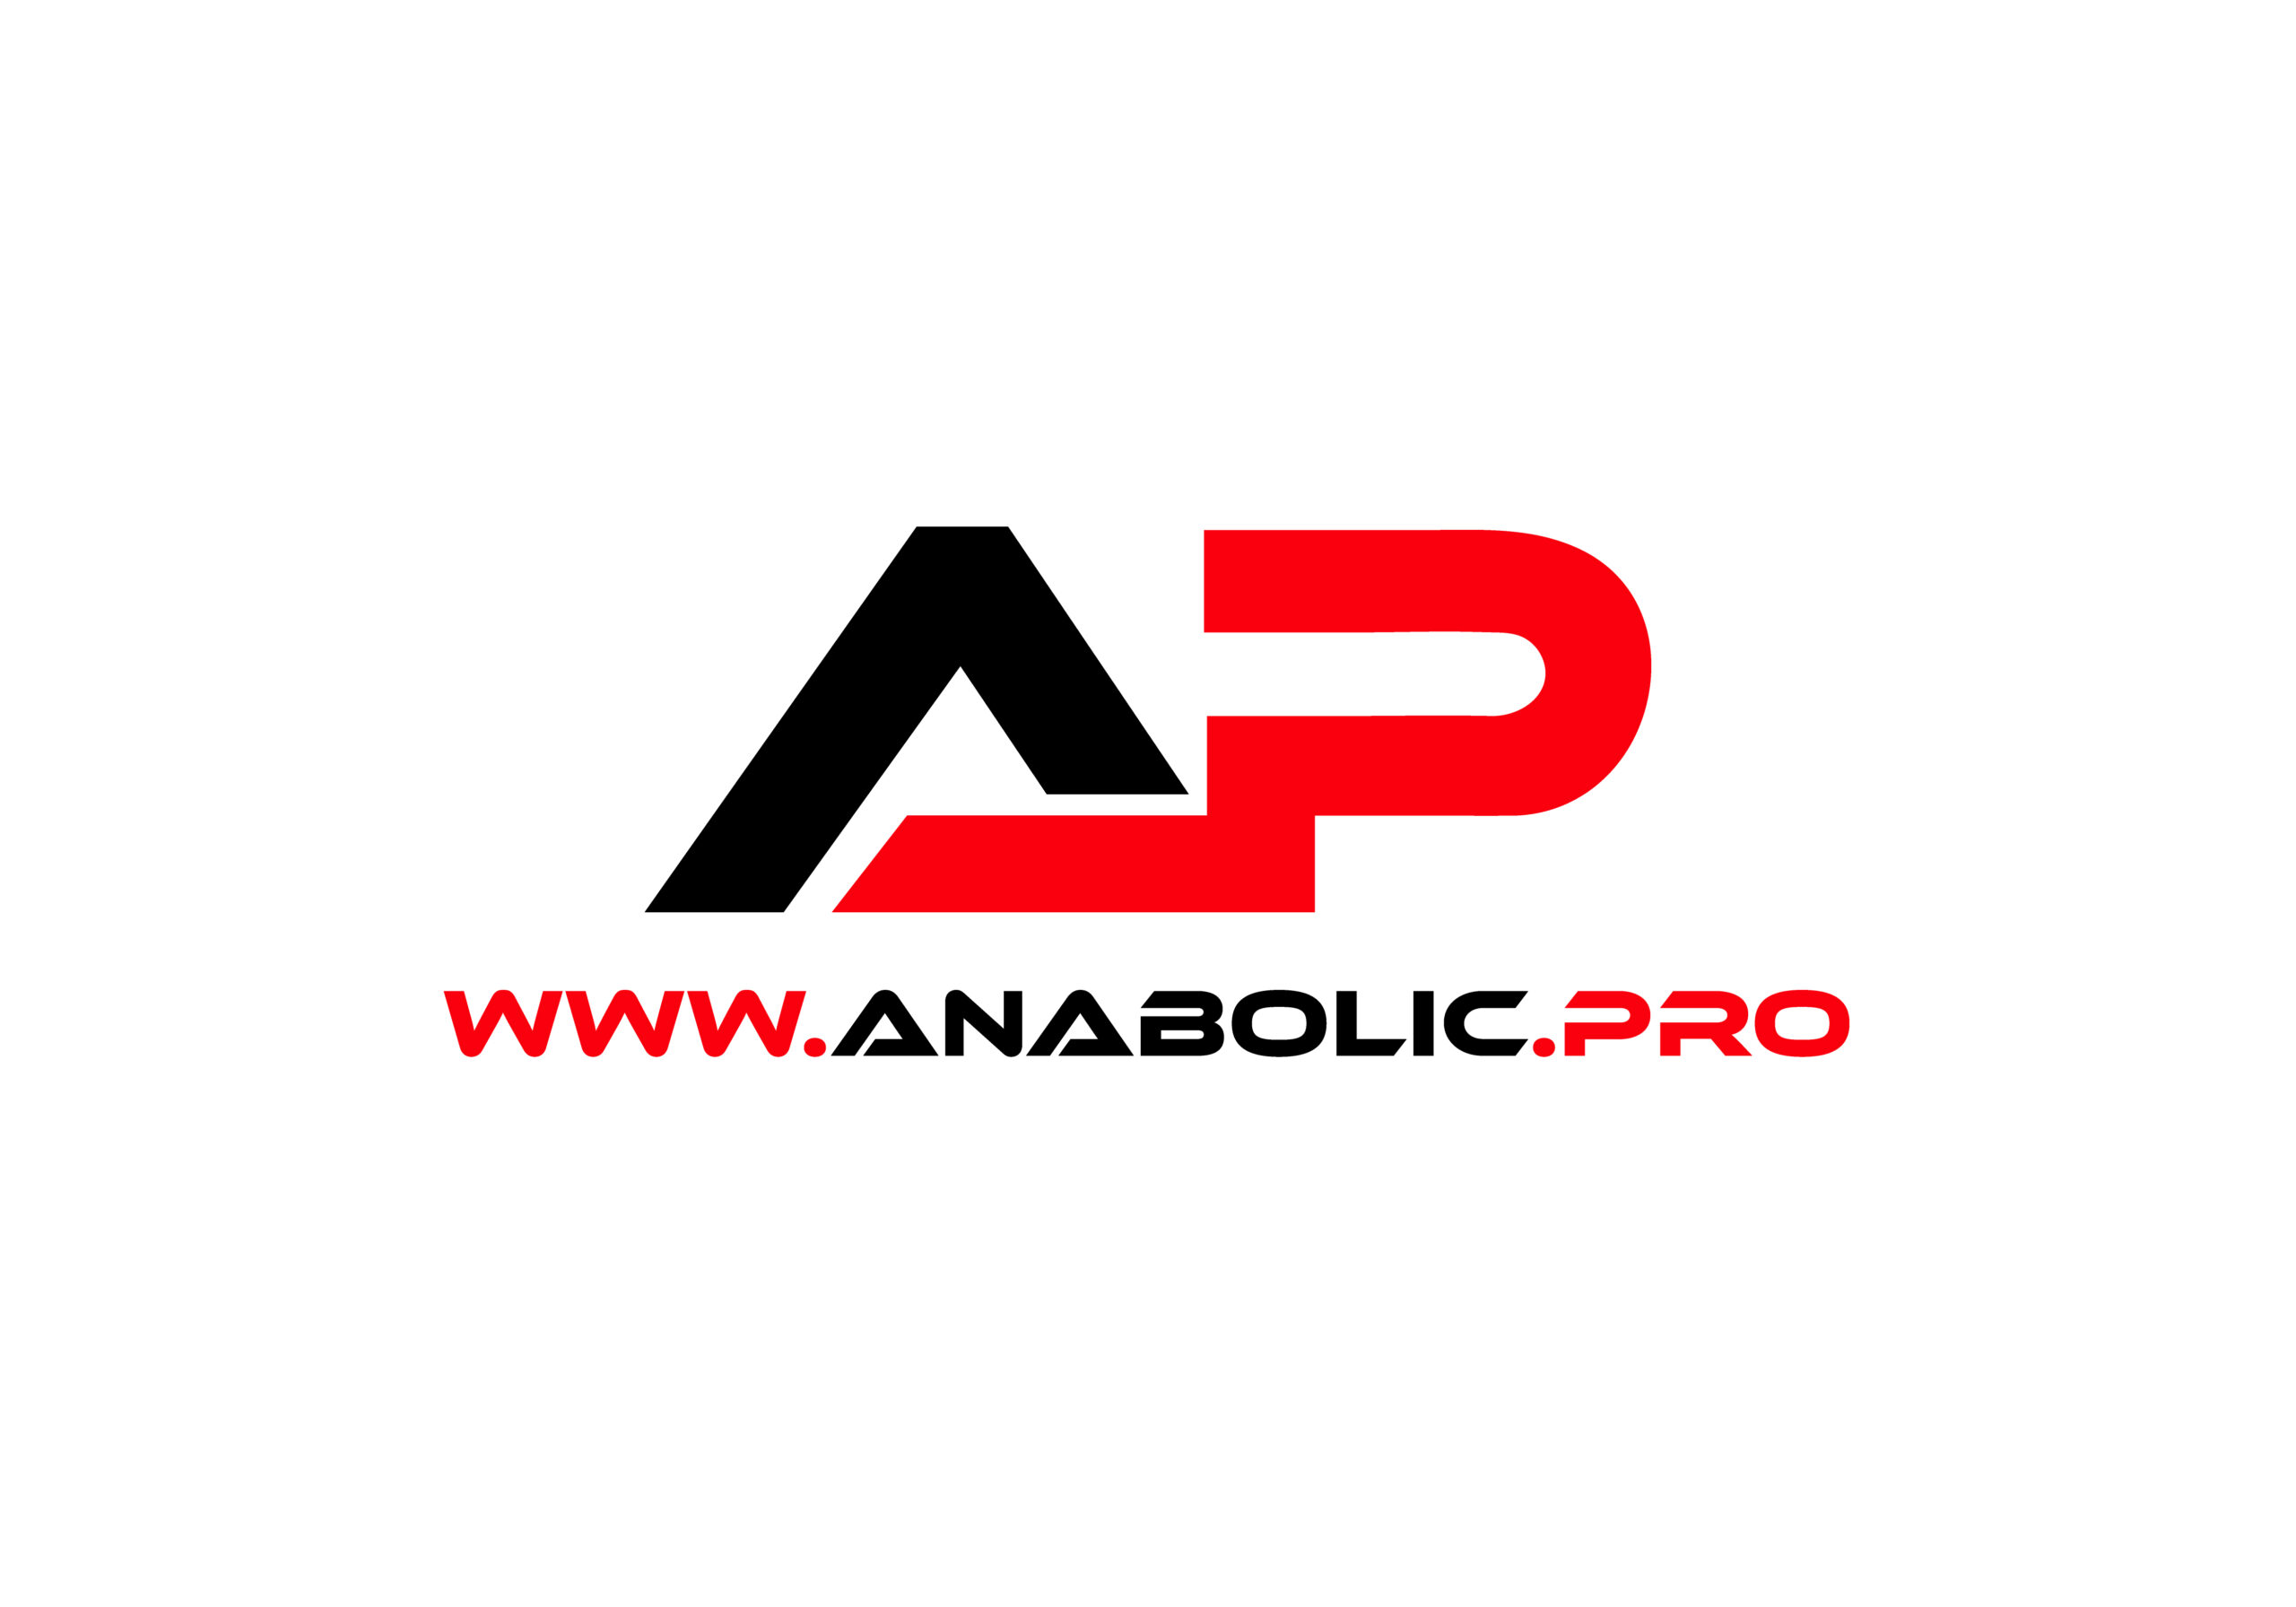 Anabolic Pro